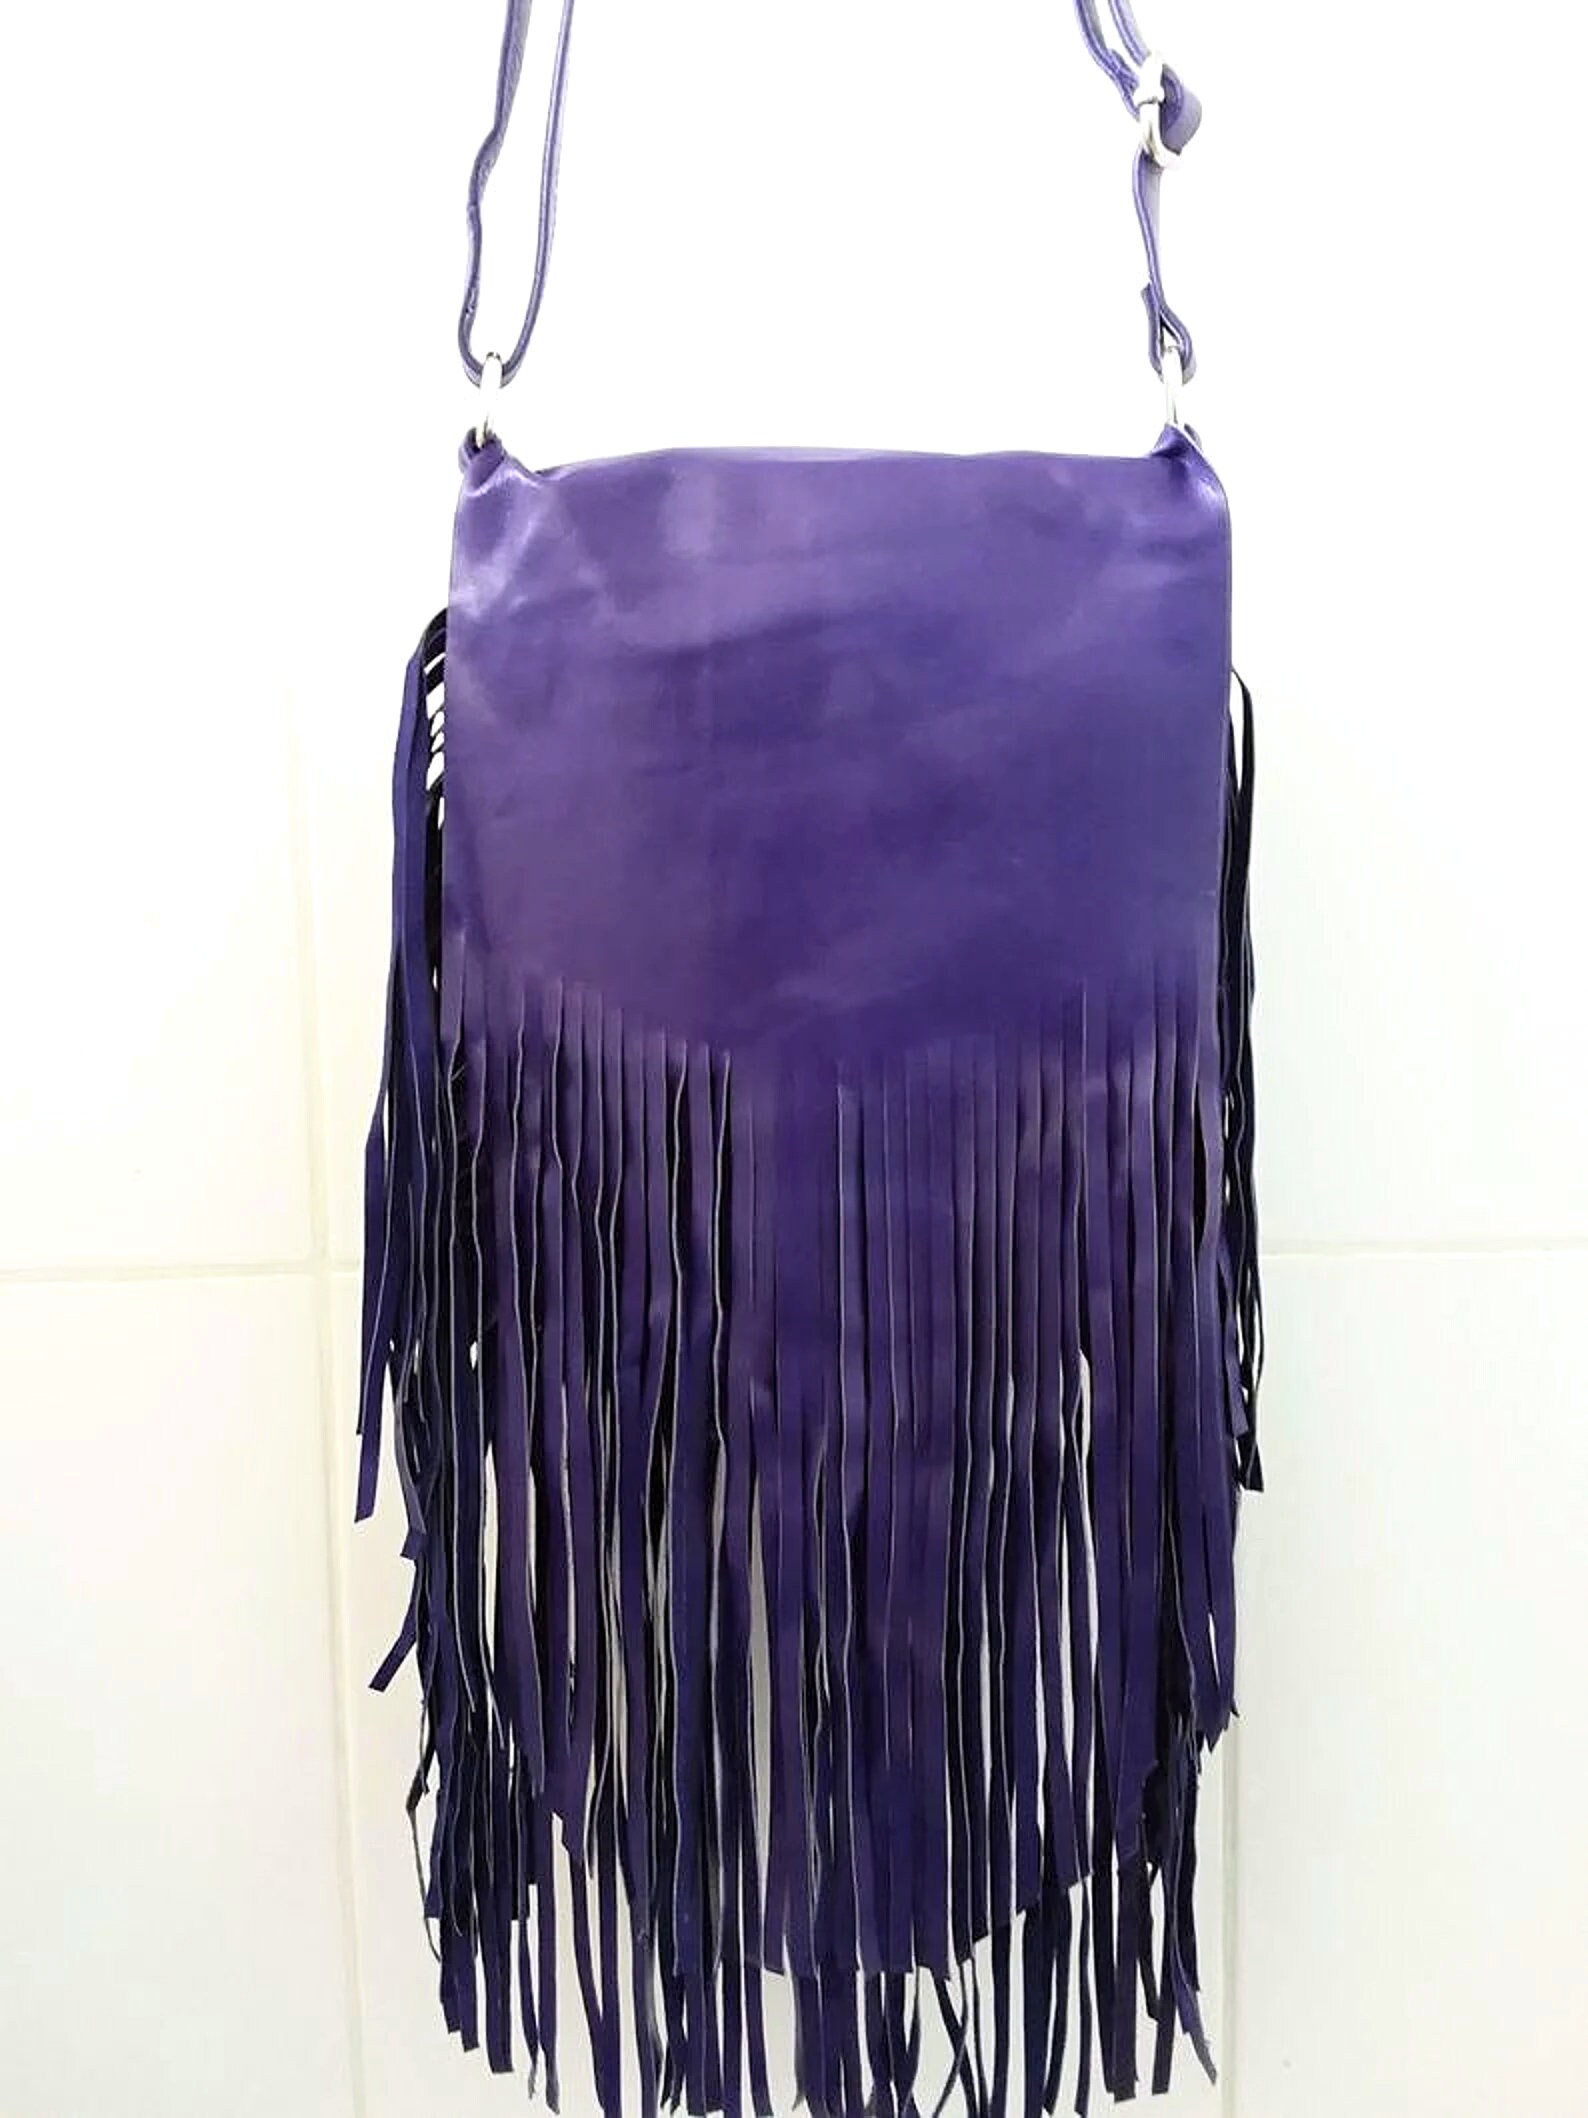 Purple Leather Fringed Bag With Long Strap Crossbody Boho - Etsy Australia